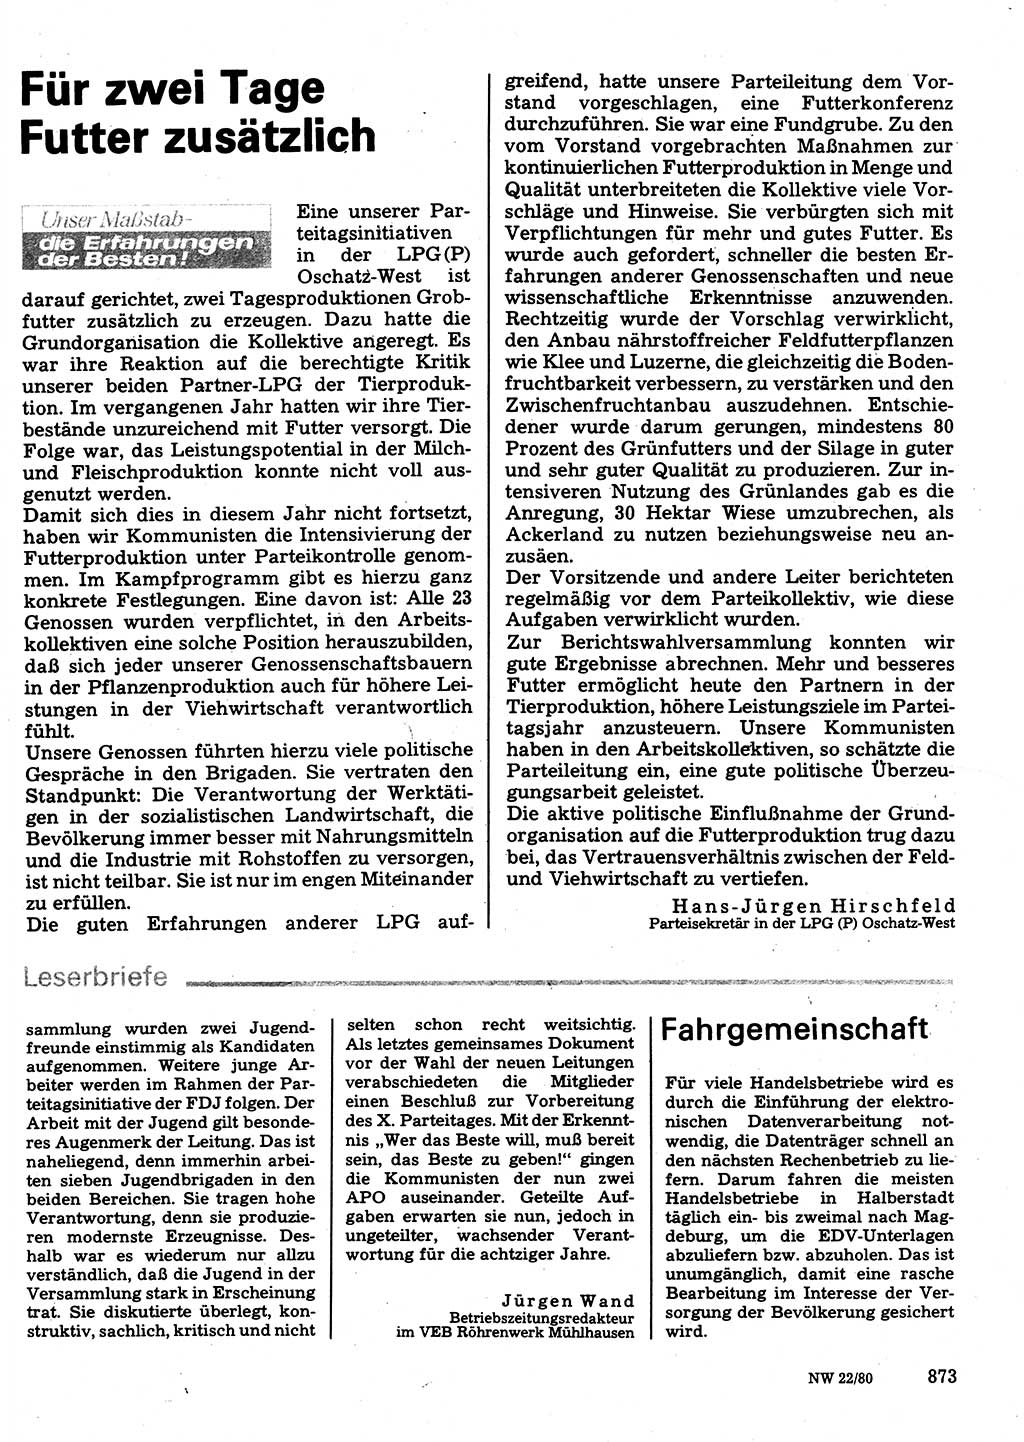 Neuer Weg (NW), Organ des Zentralkomitees (ZK) der SED (Sozialistische Einheitspartei Deutschlands) für Fragen des Parteilebens, 35. Jahrgang [Deutsche Demokratische Republik (DDR)] 1980, Seite 873 (NW ZK SED DDR 1980, S. 873)